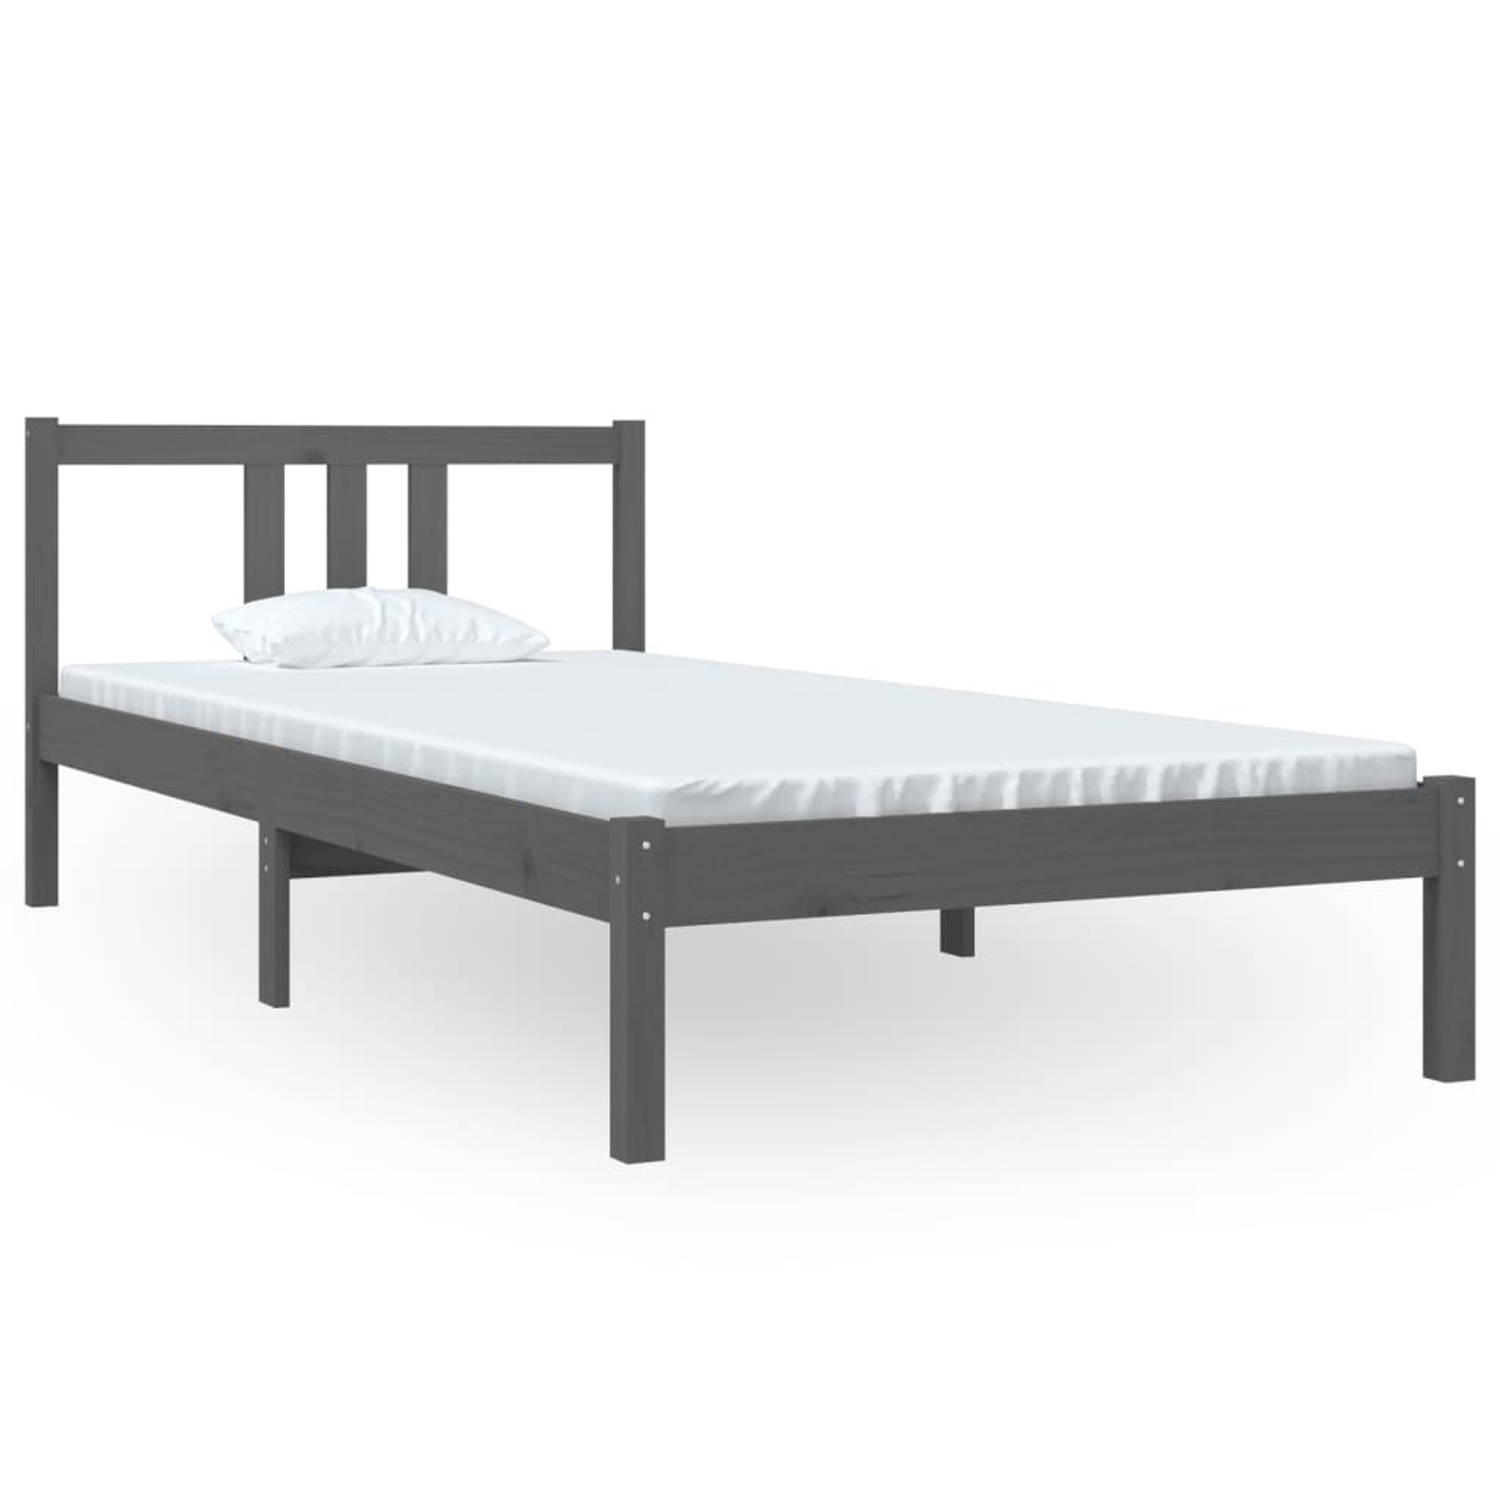 The Living Store Bedframe massief hout grijs 90x200 cm - Bedframe - Bedframes - Bed - Bedbodem - Ledikant - Bed Frame - Massief Houten Bedframe - Slaapmeubel - Eenpersoonsbed - Bed